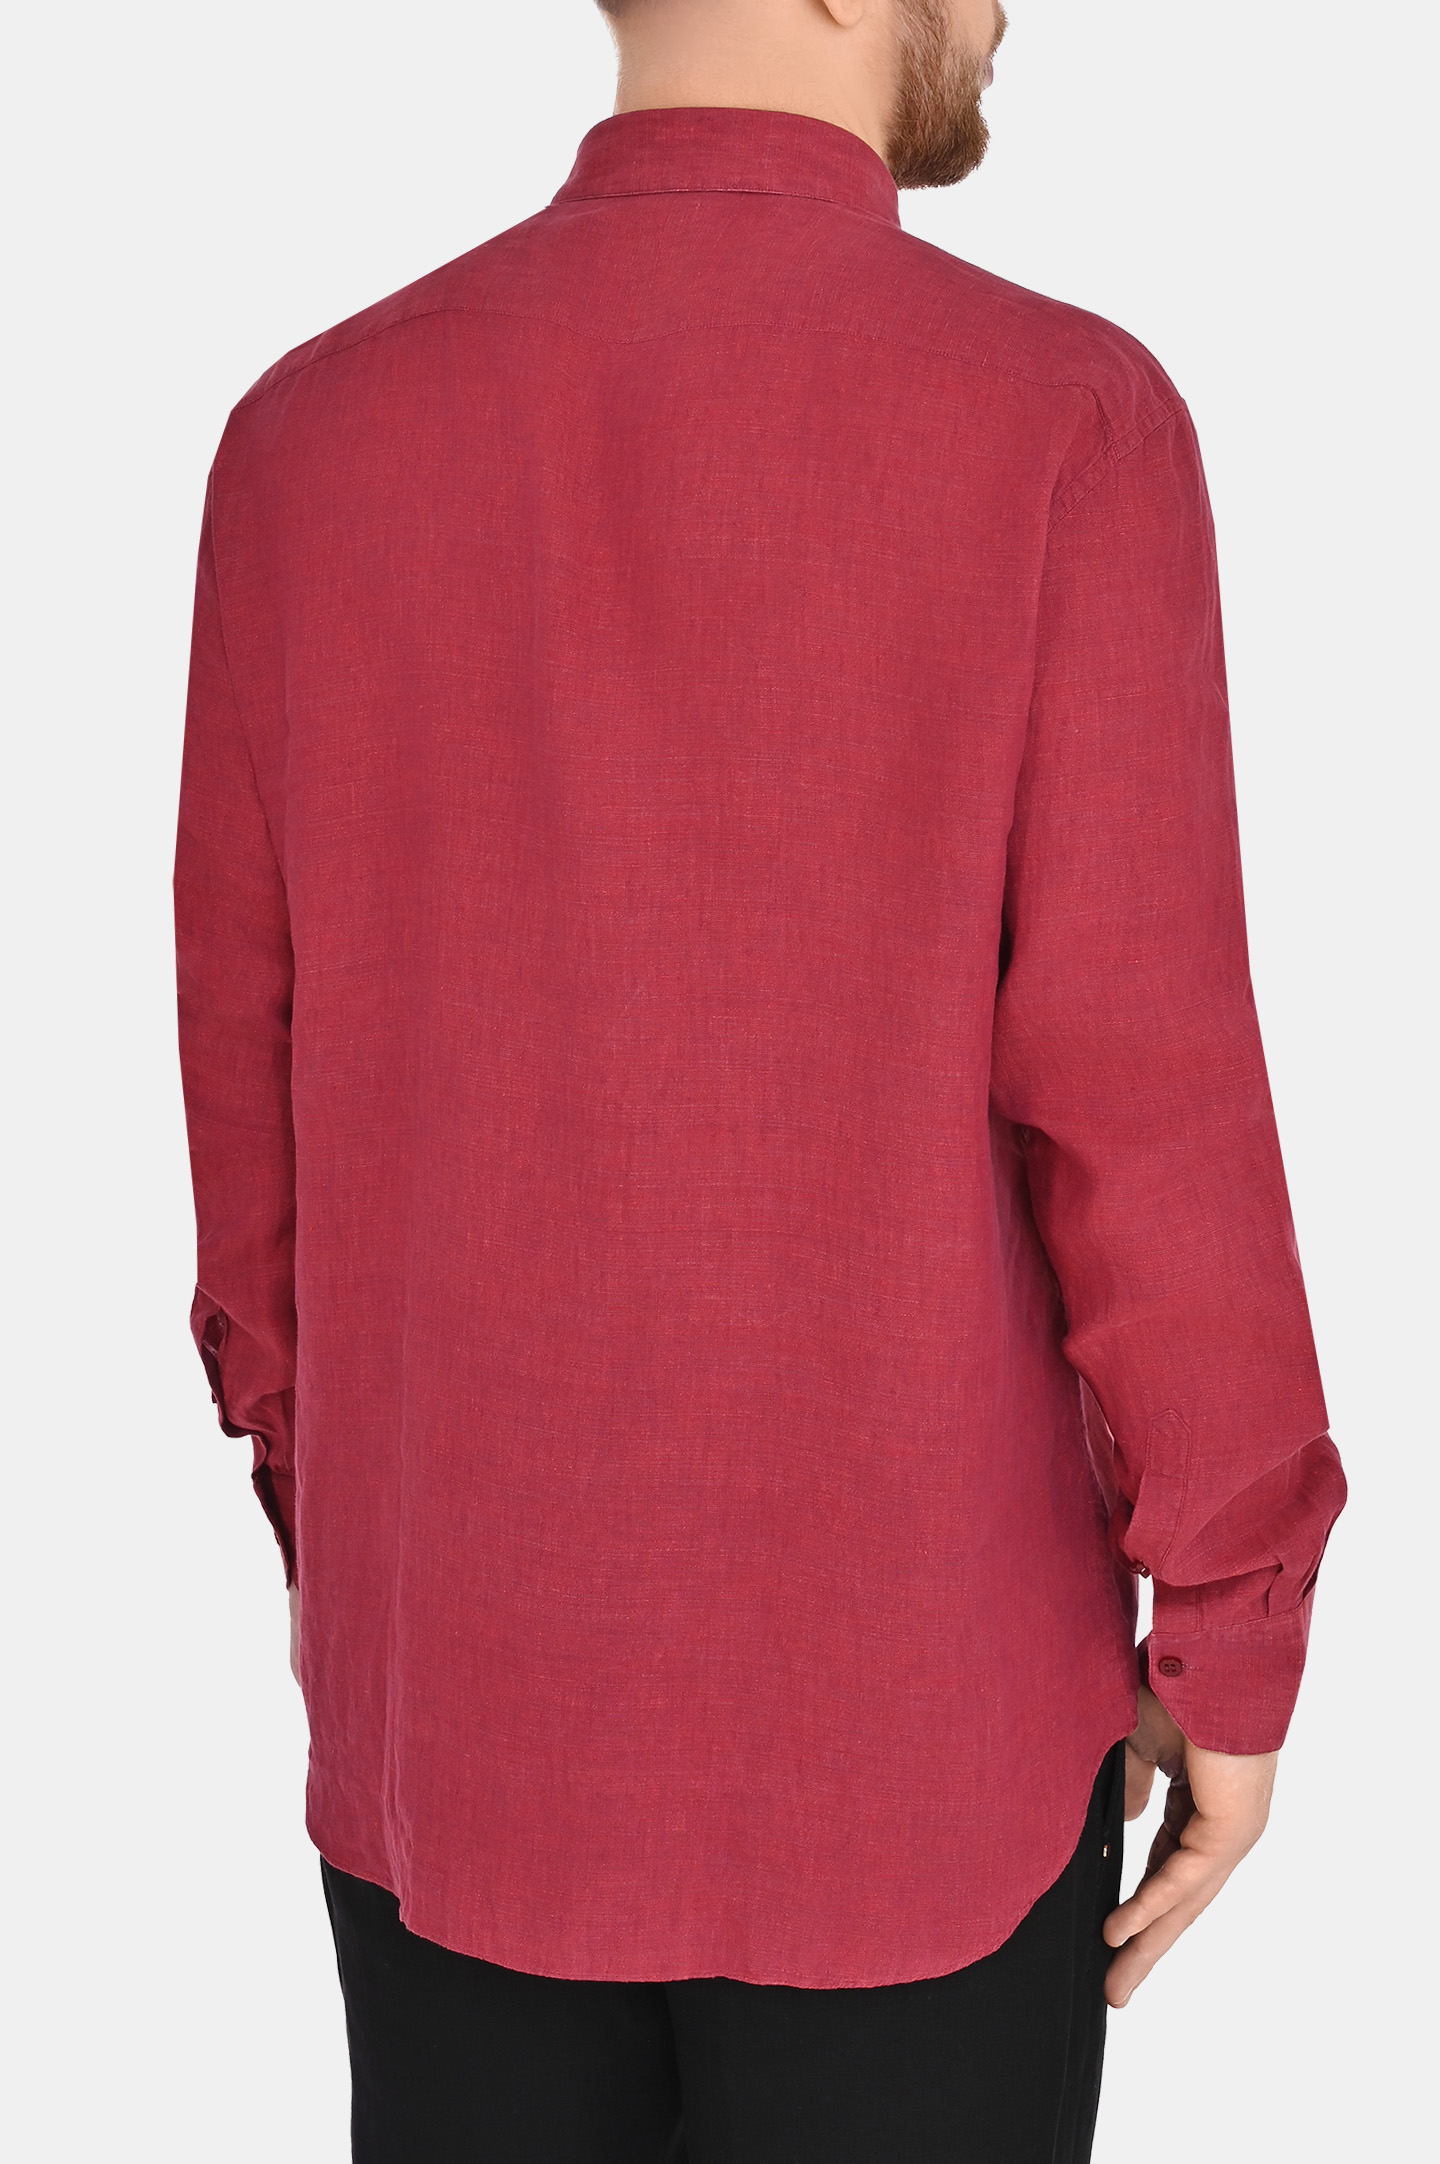 Рубашка STEFANO RICCI MC004932 LX2330, цвет: Малиновый, Мужской